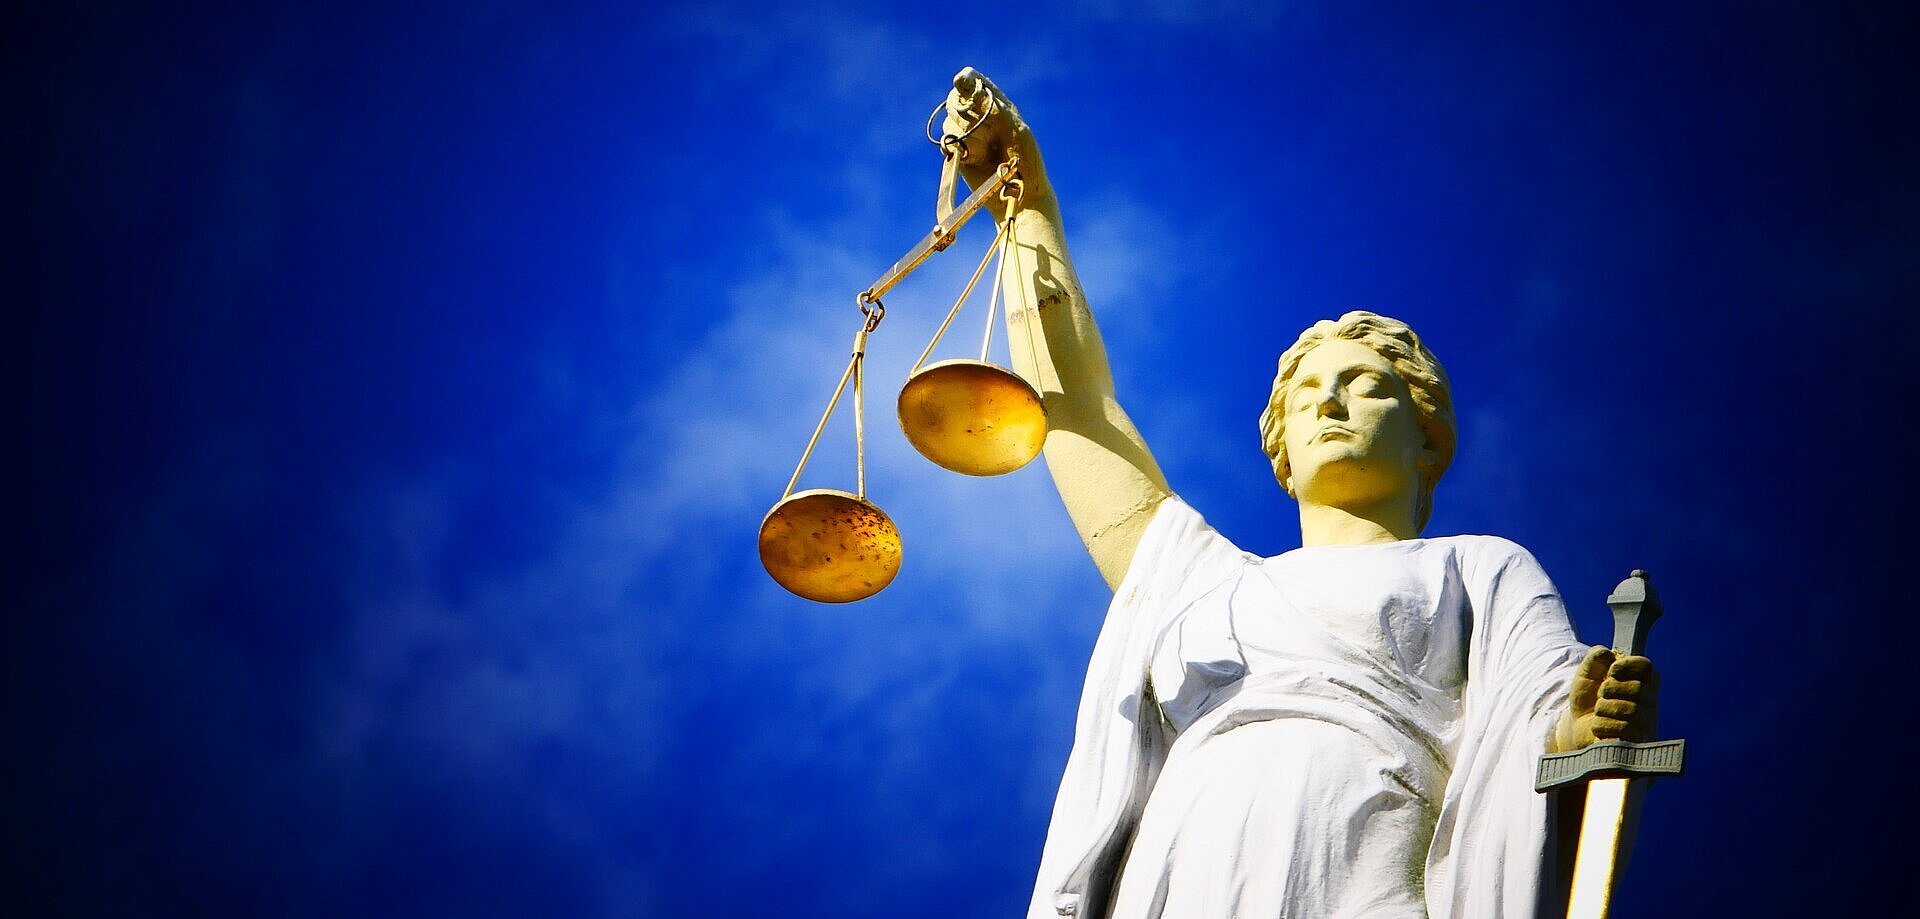 Imagem de uma estátua segurando uma balança, objeto símbolo do julgamento.